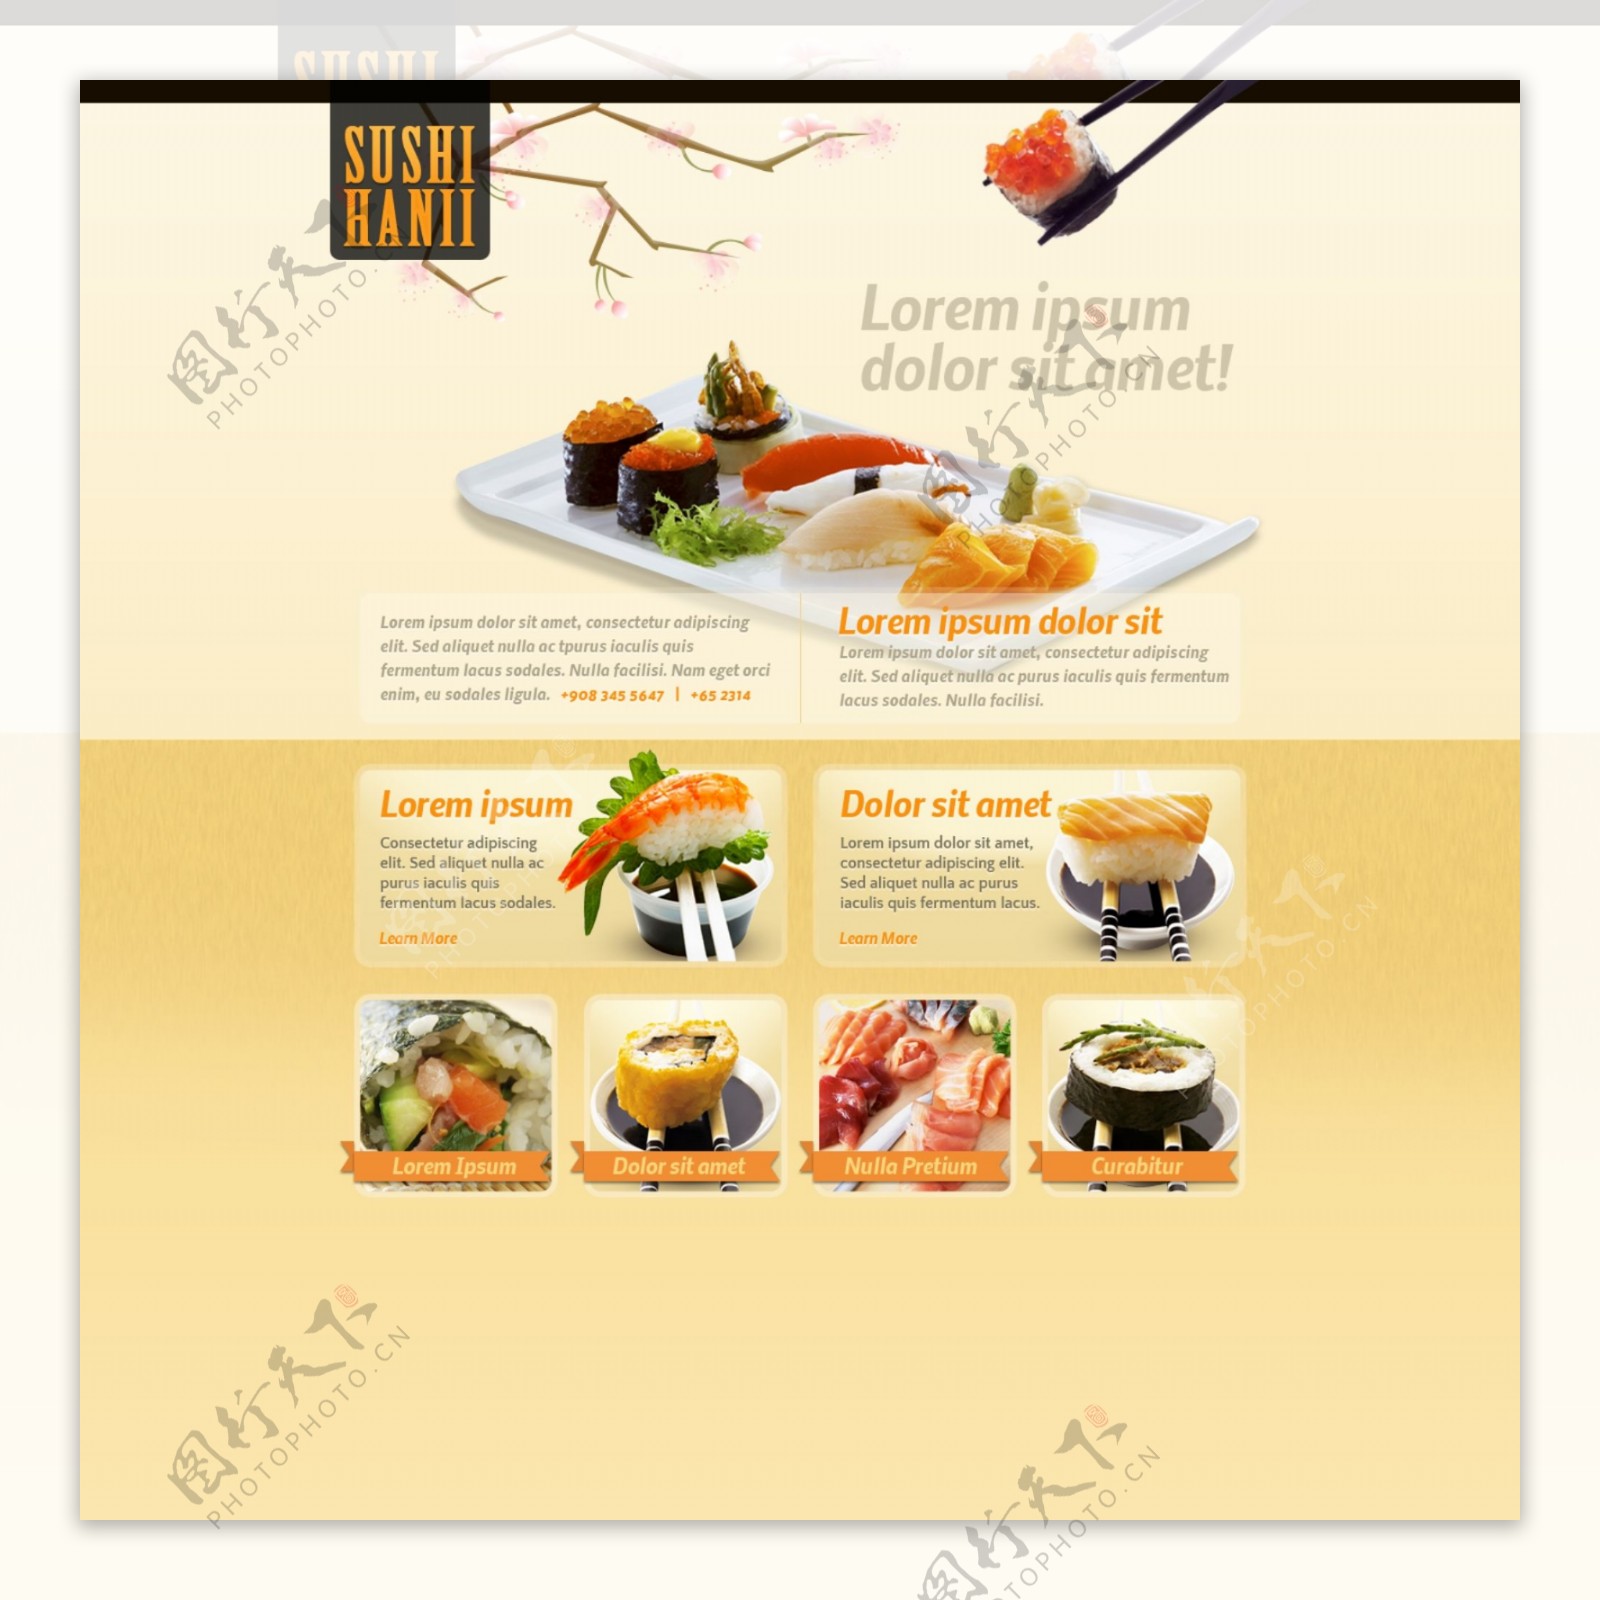 美食网站模板PSD素材